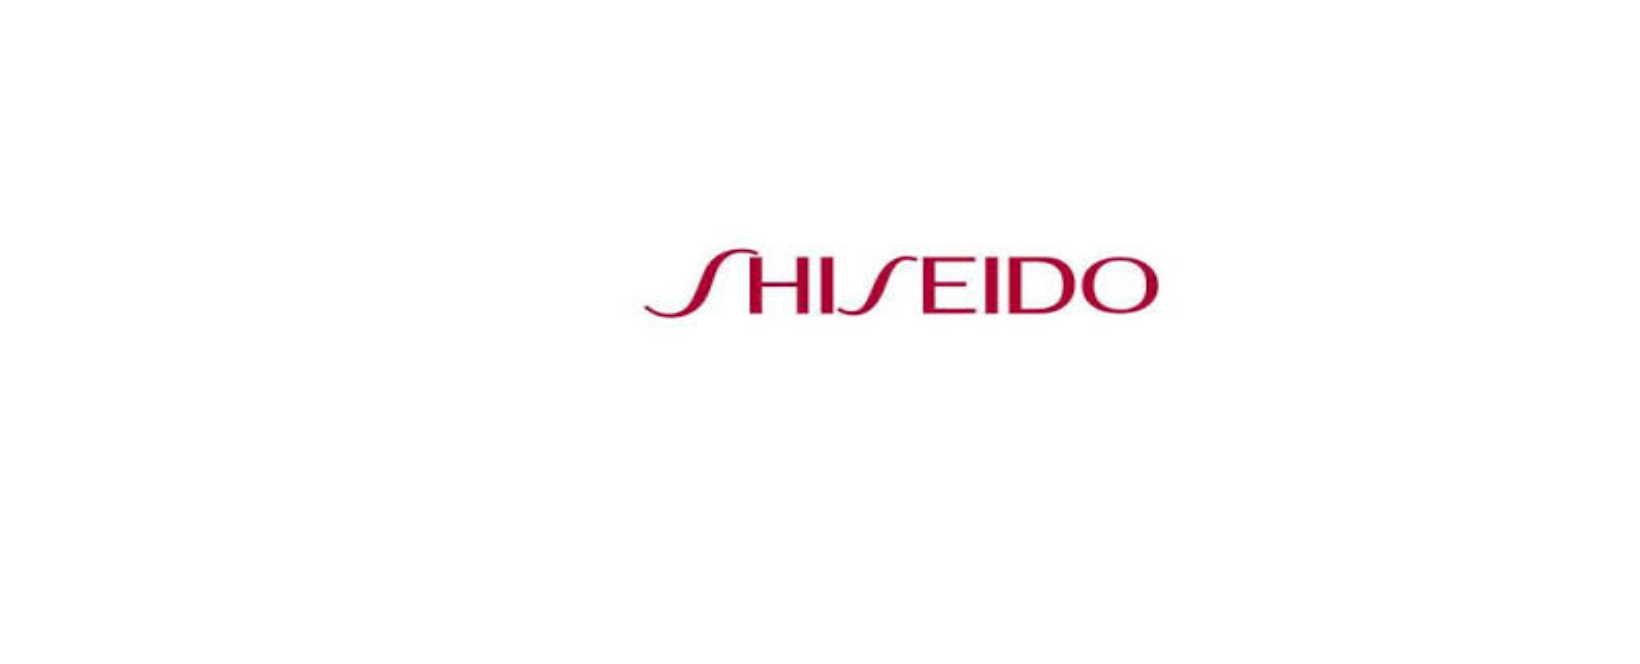 Shiseido Discount Code 2022